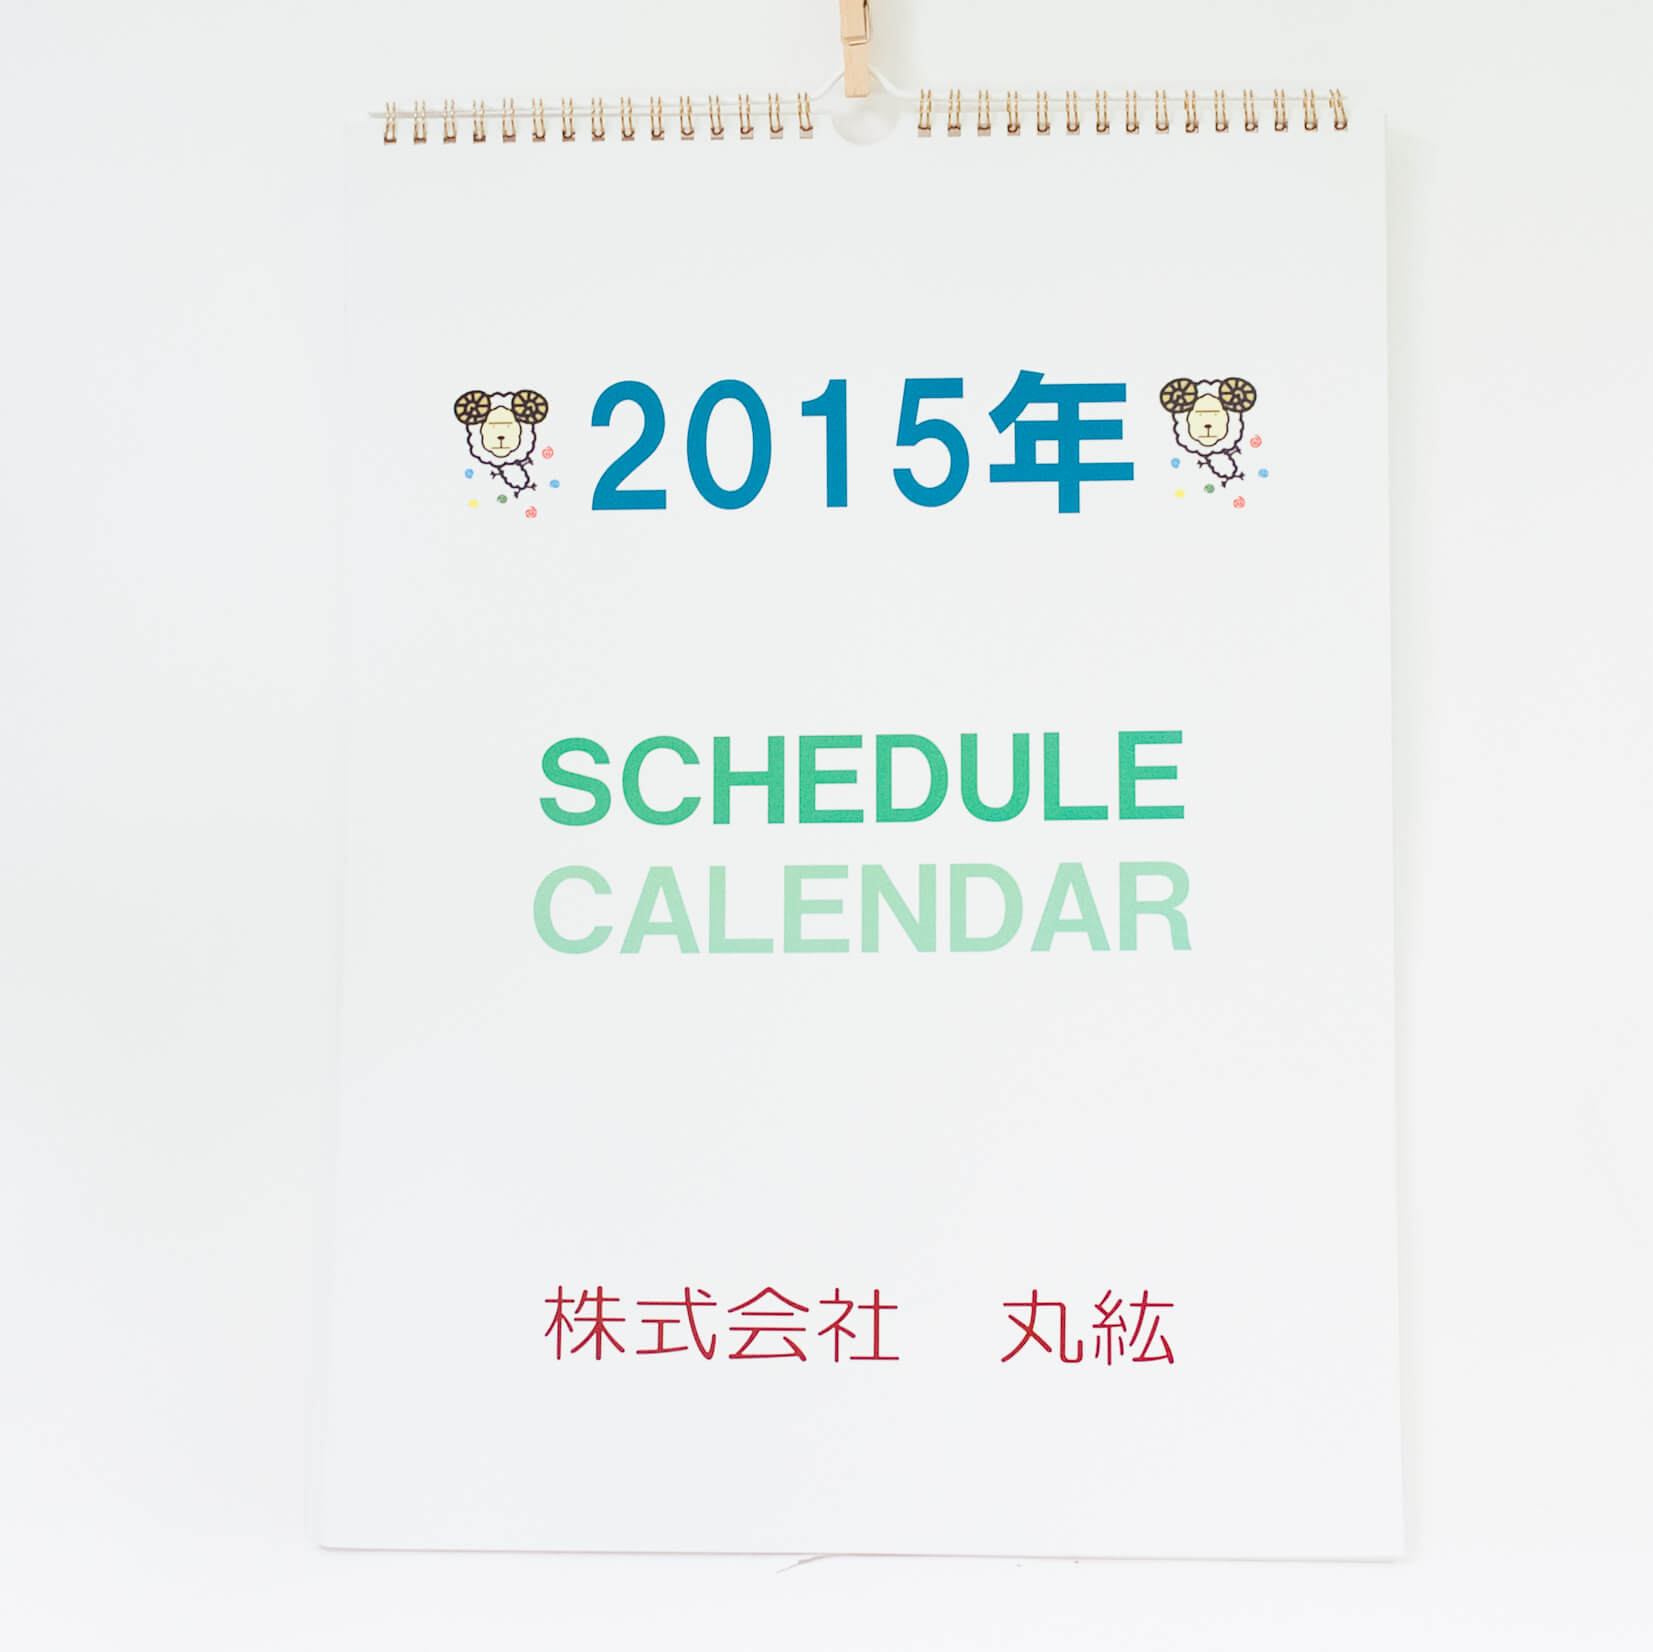 「株式会社丸紘 様」製作のオリジナルカレンダー